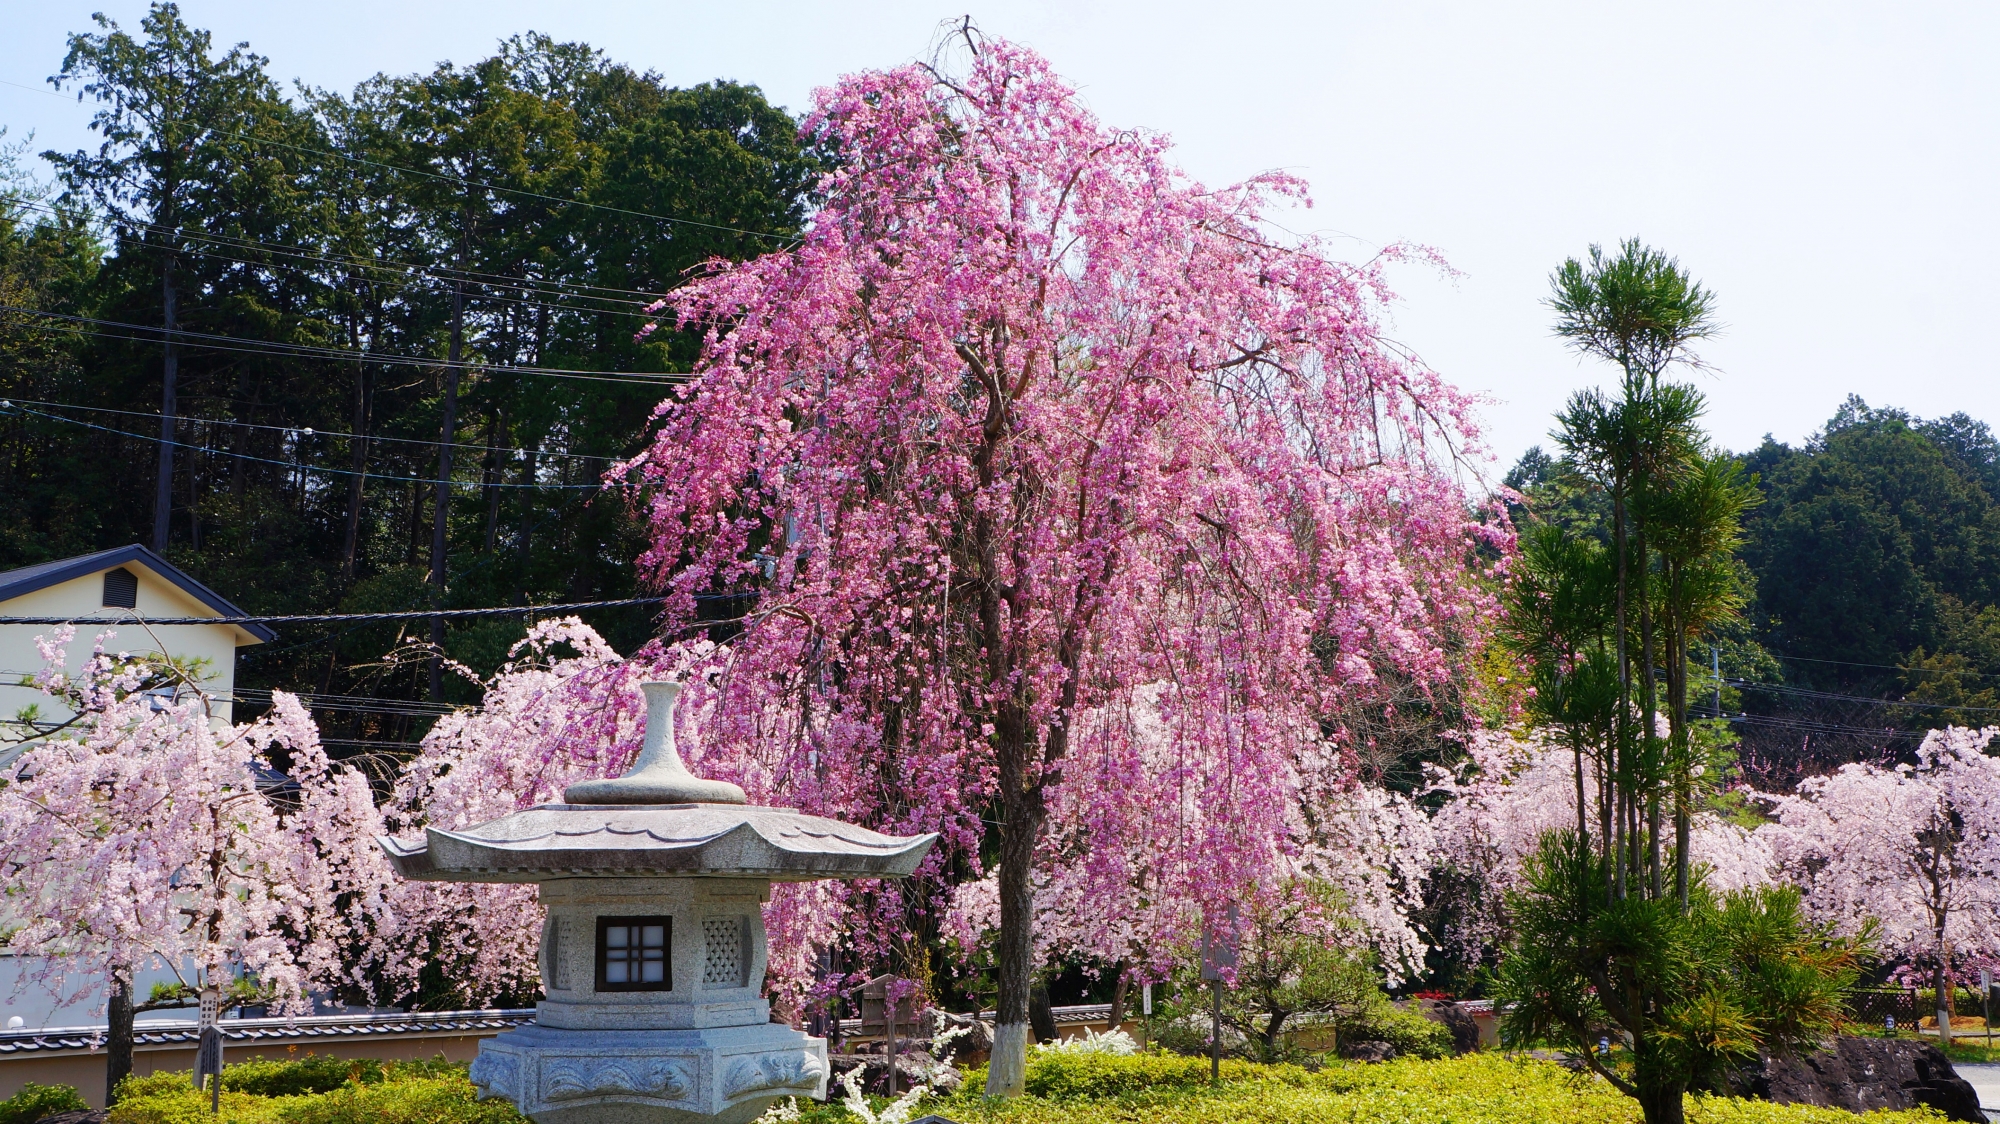 桜園の華やかなピンクの桜を背景にすれば鮮やかさが際立つ桜